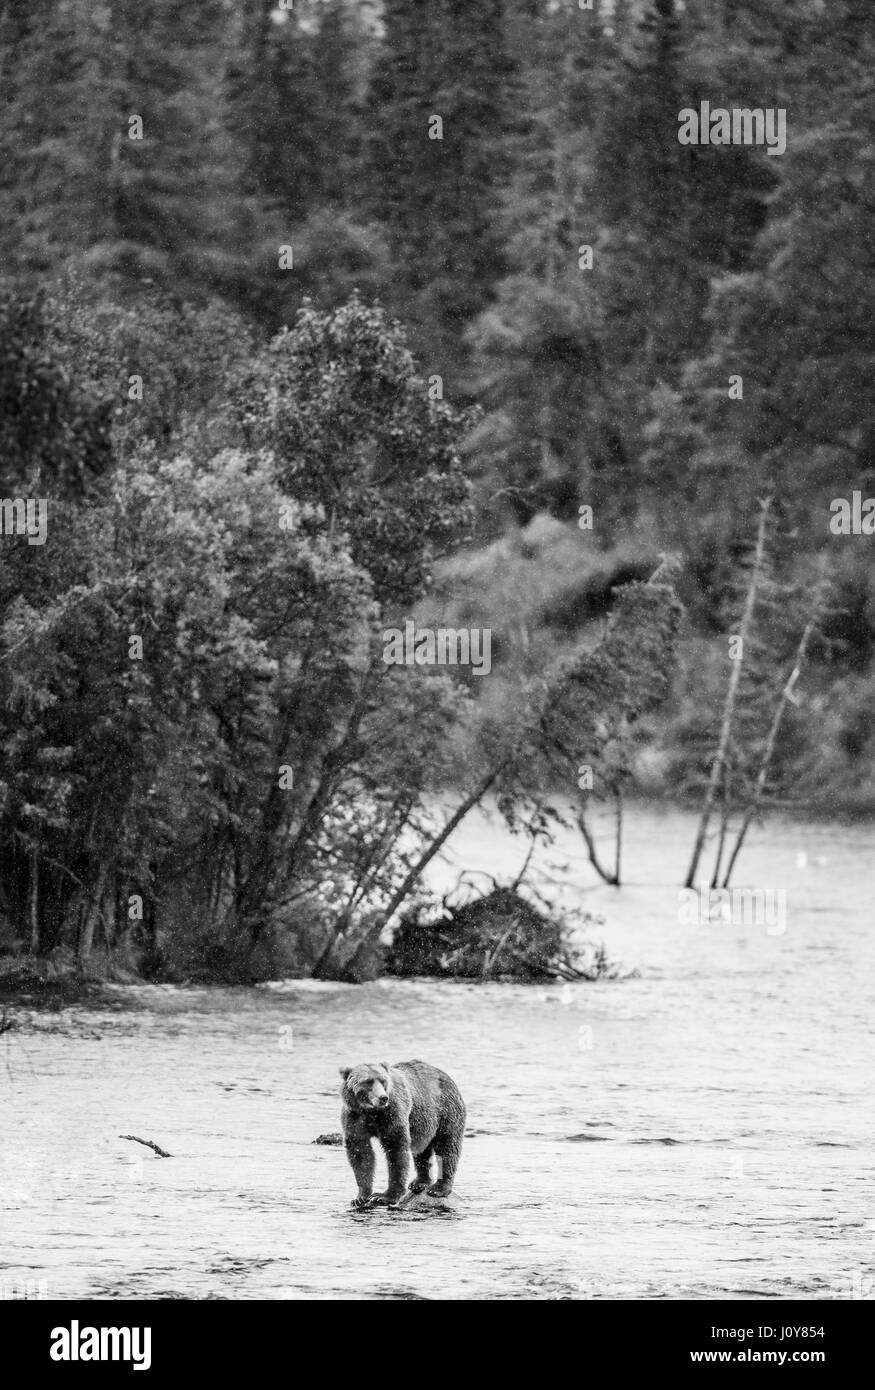 Un orso bruno in piedi su una roccia nel mezzo del fiume contro uno sfondo di paesaggio mozzafiato. Stati Uniti d'America. L'Alaska. Kathmai Parco Nazionale. Foto Stock